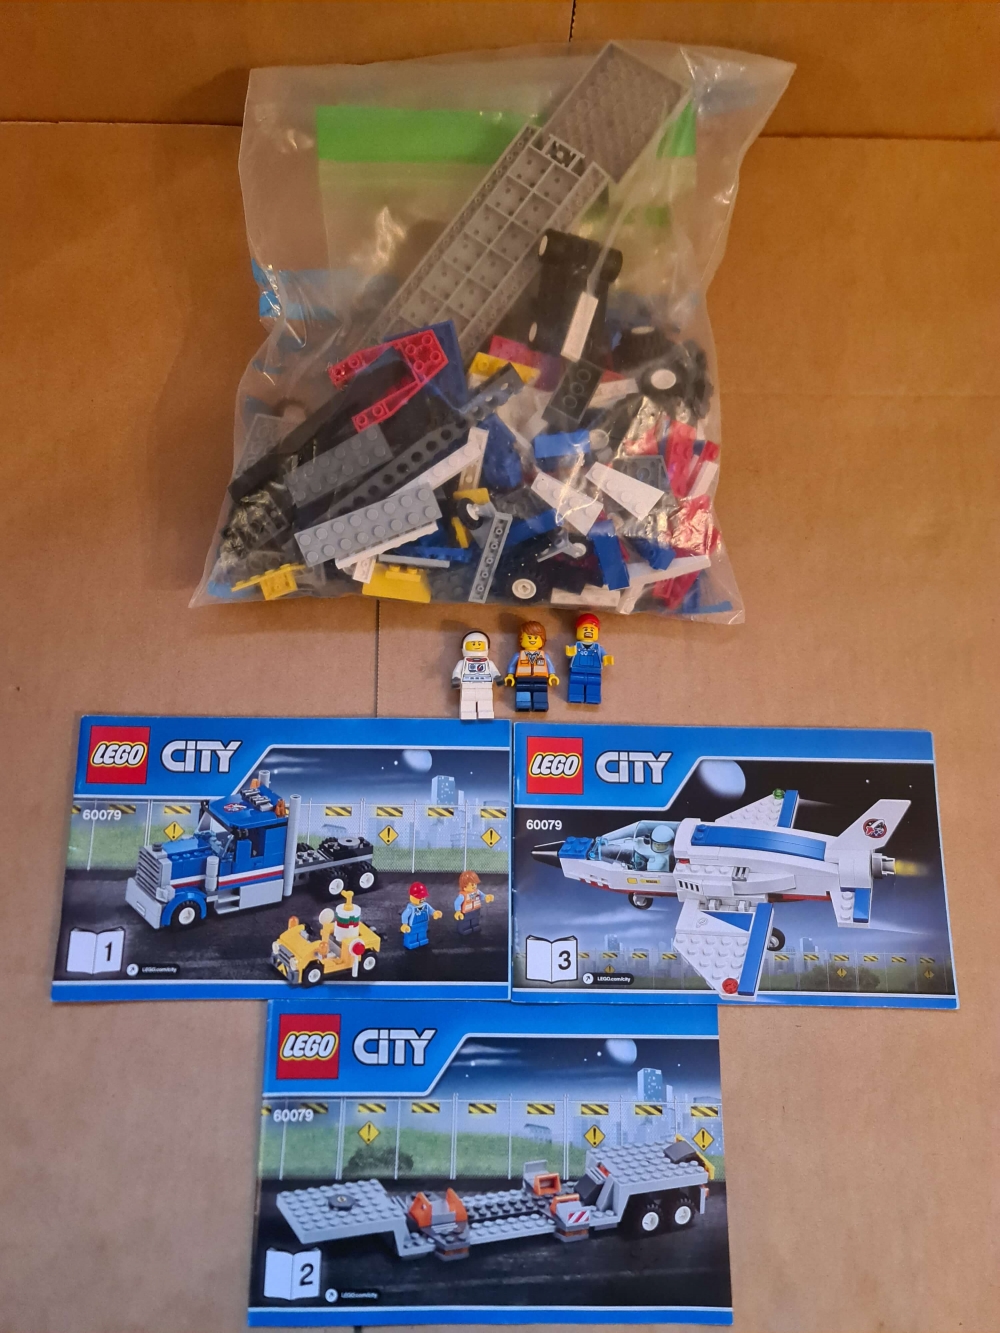 Sett 60079 fra Lego City serien. 

Meget pent. Komplett med manualer. 